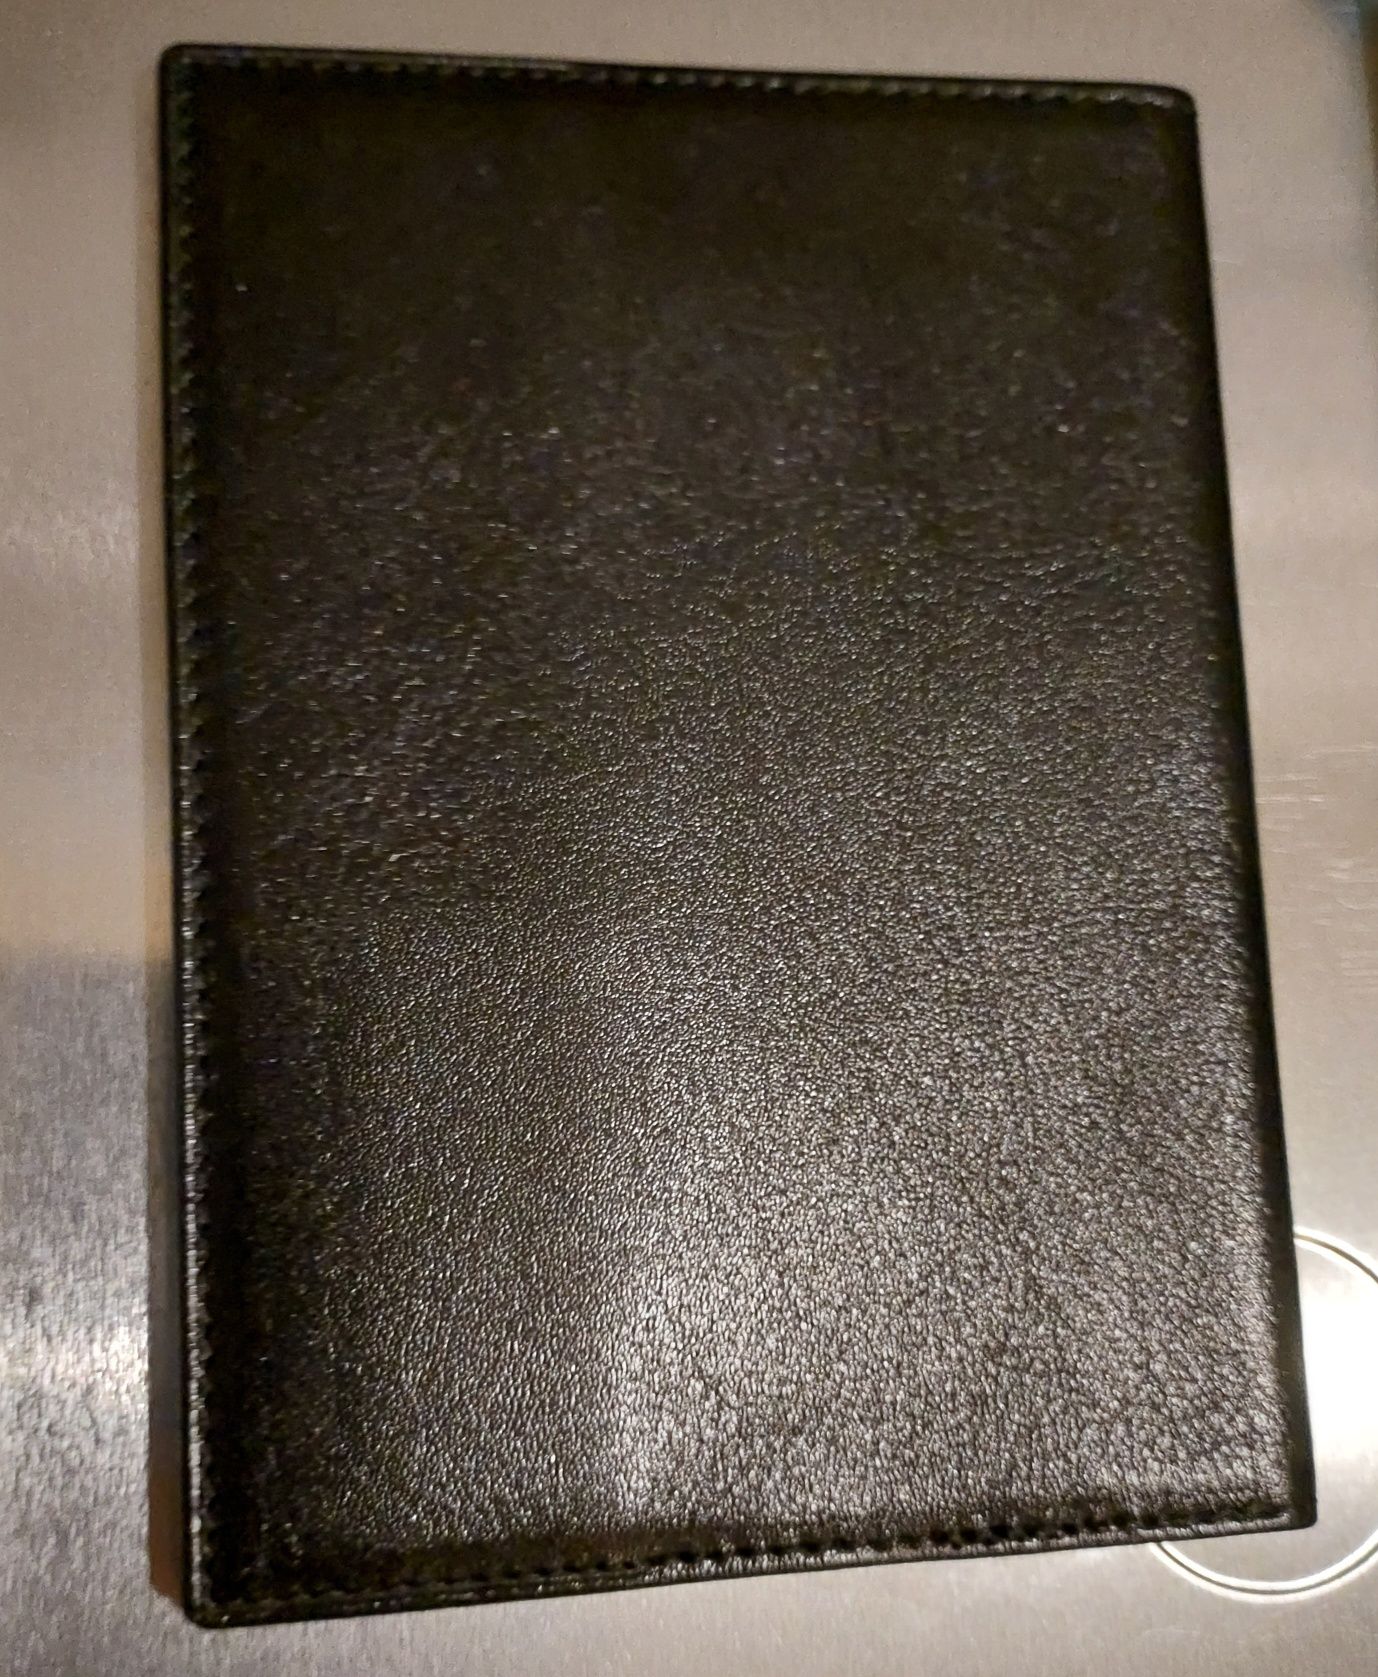 Кожаная обложка на паспорт или загранпаспорт